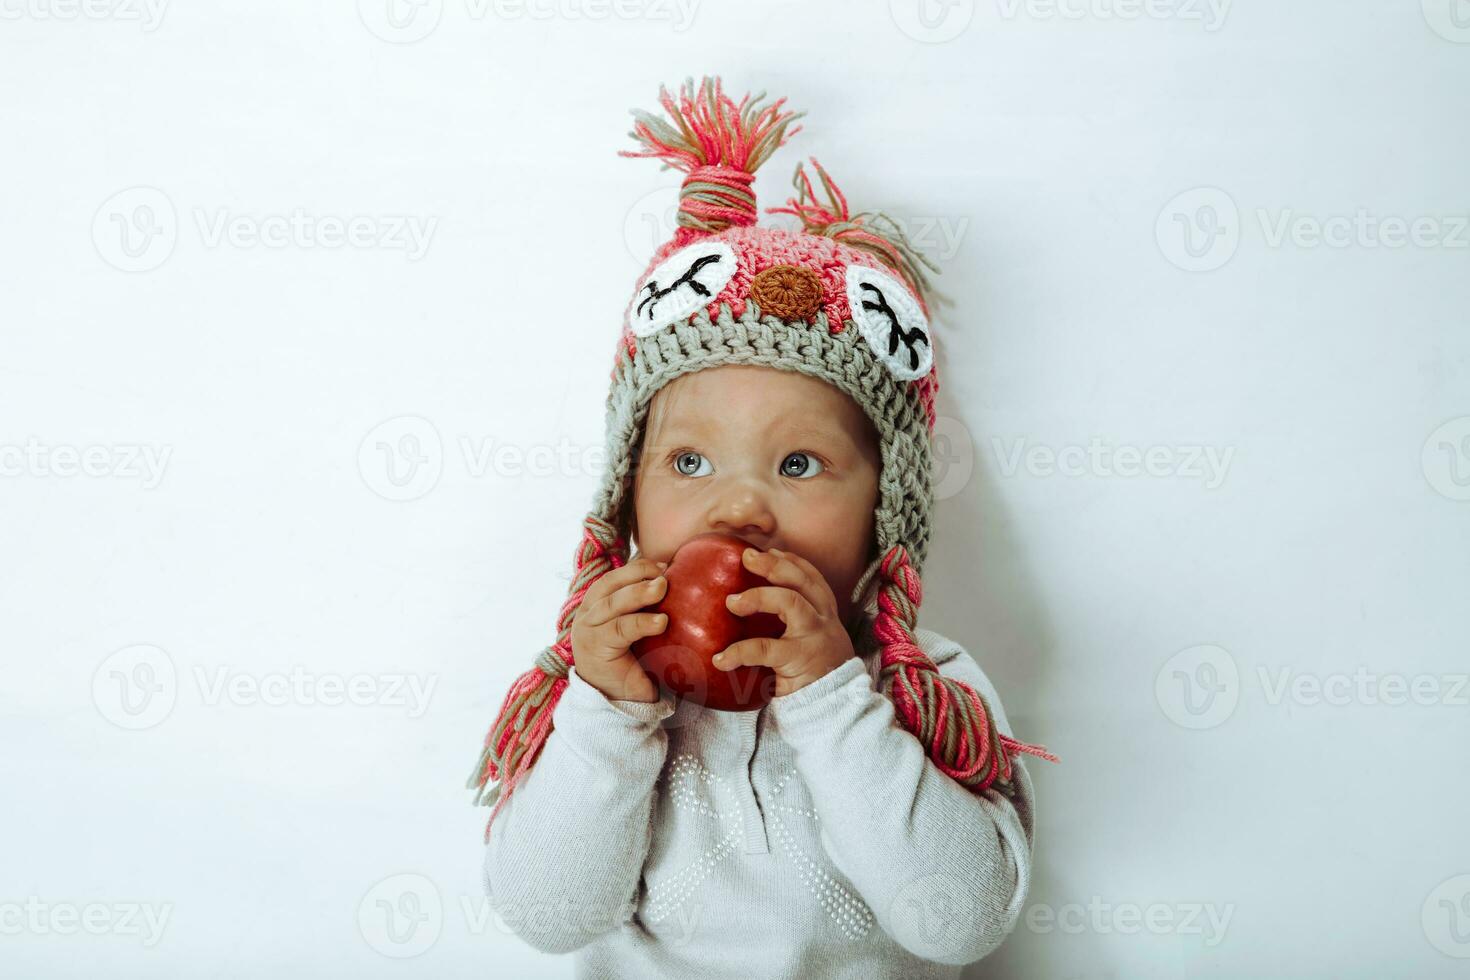 weinig meisje bijten een rood appel foto